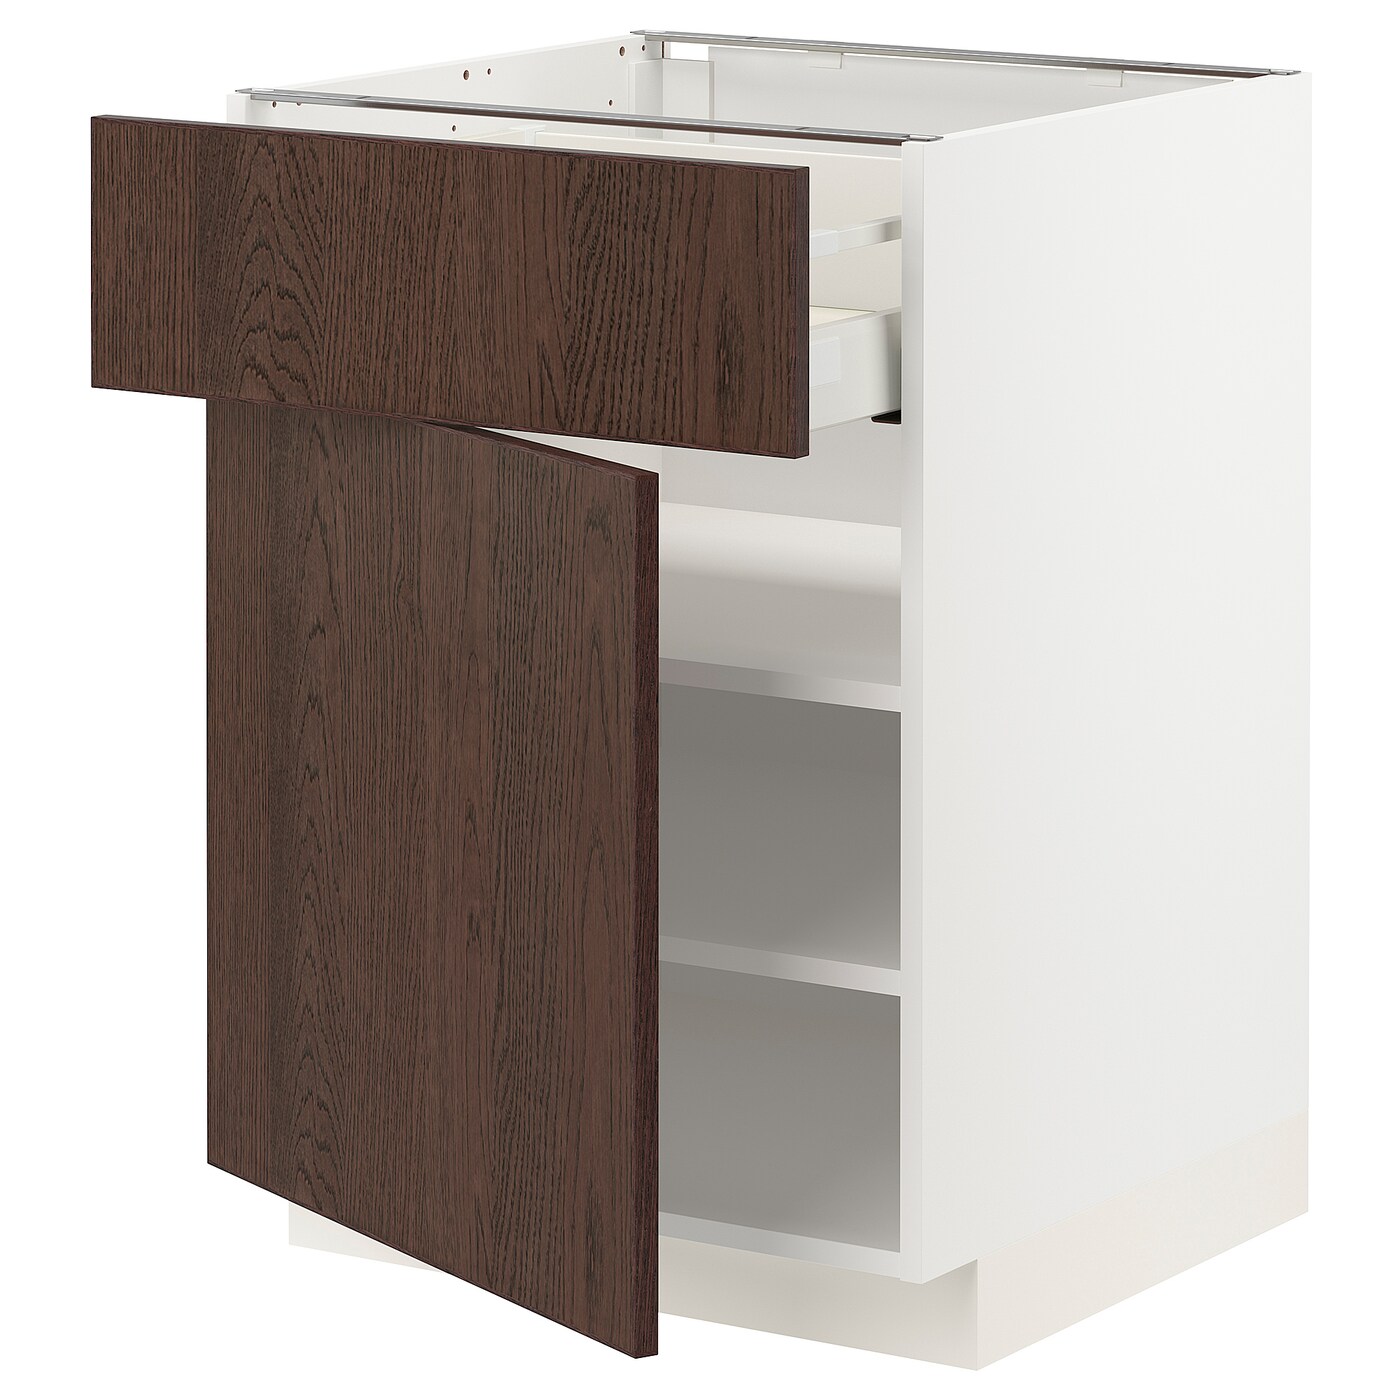 Напольный шкаф - METOD / MAXIMERA IKEA/ МЕТОД/ МАКСИМЕРА ИКЕА,  88х60 см, белый/коричневый